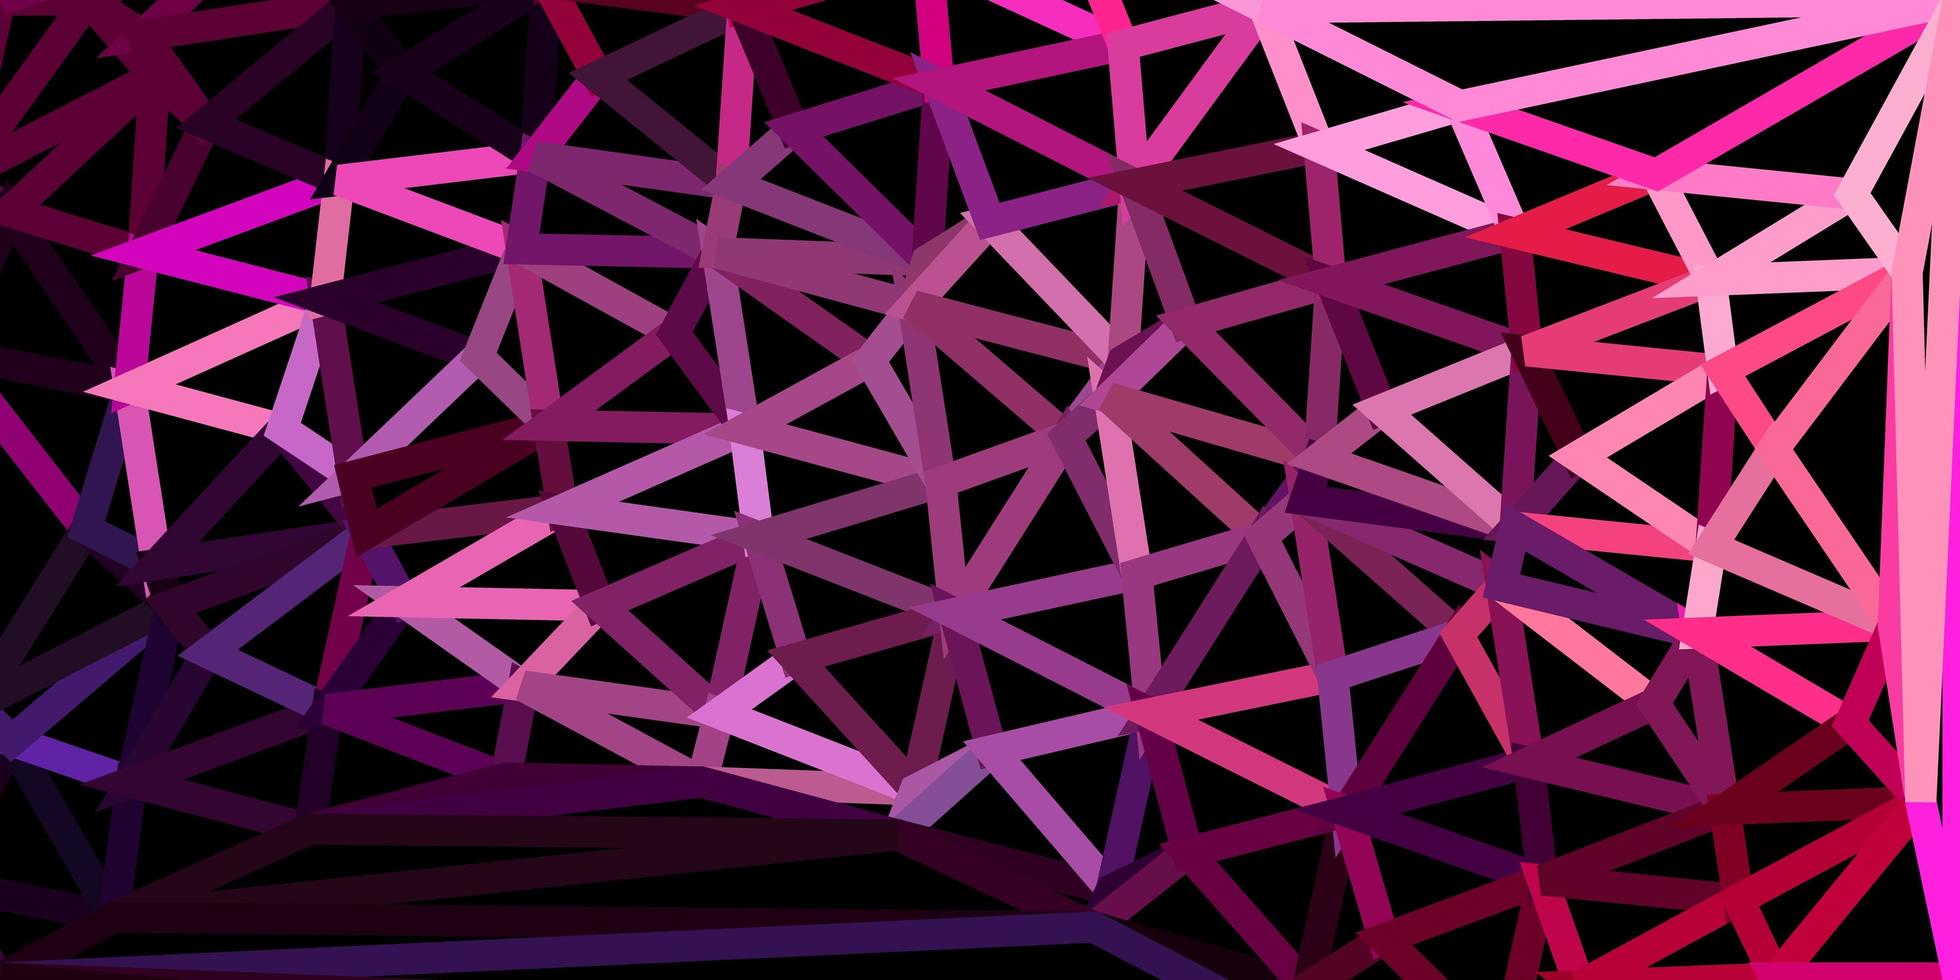 textura de triângulo poli vetor roxo e rosa escuro.